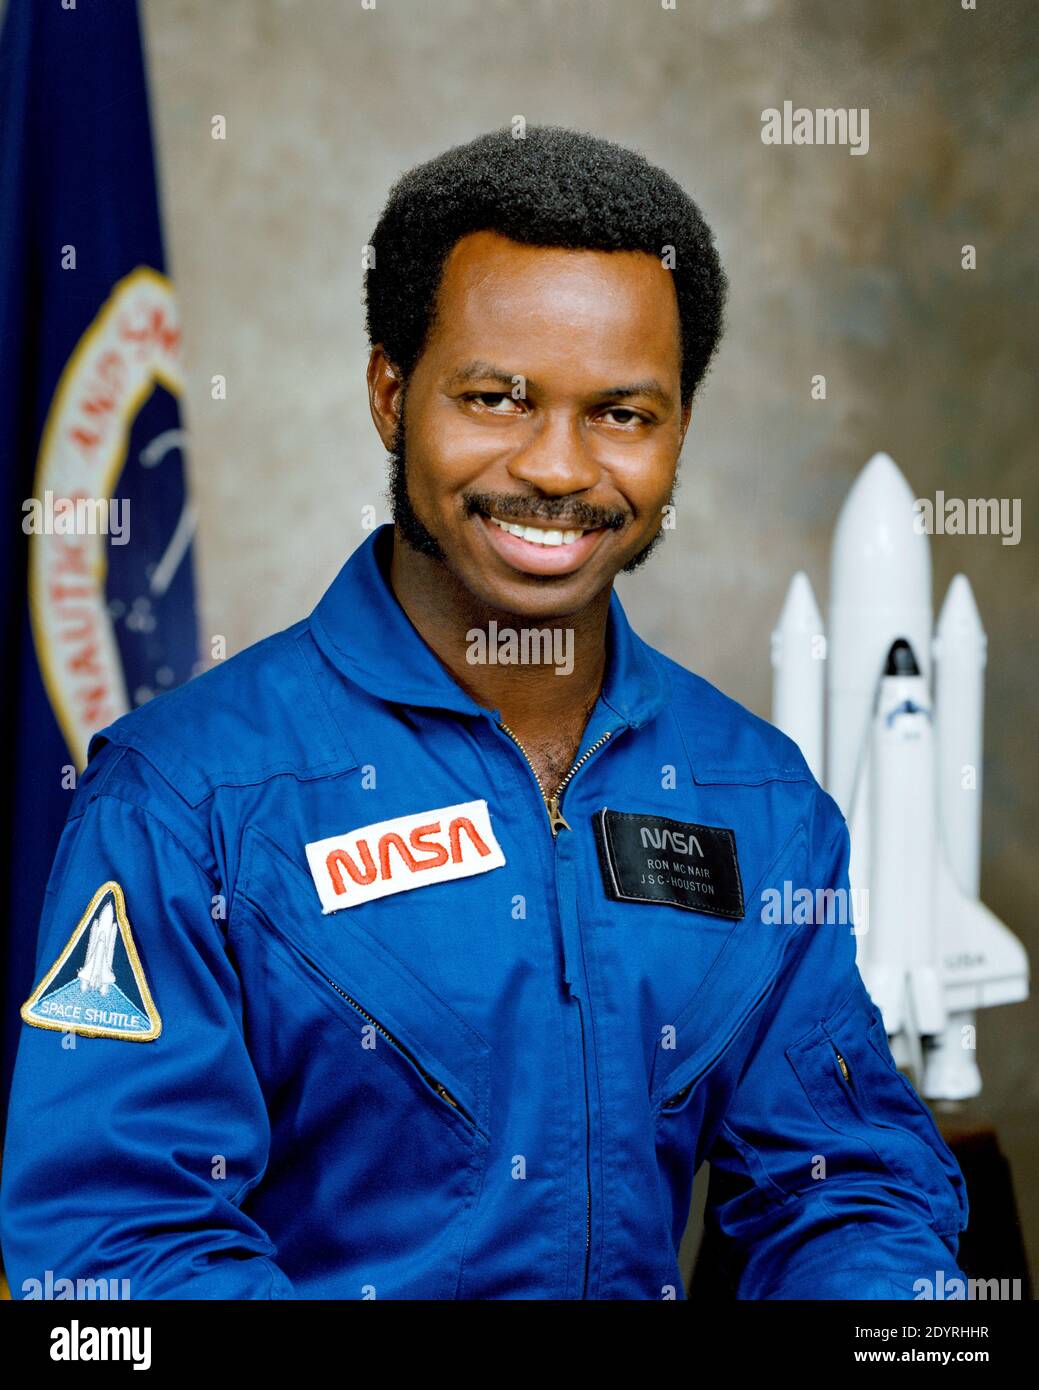 Ronald Erwin McNair (21 octobre 1950 – 28 janvier 1986) était un astronaute et physicien américain de la NASA. Il est décédé lors du lancement de la navette spatiale Challenger dans la mission STS-51-L, où il était l'un des trois spécialistes de la mission dans une équipe de sept personnes. Avant la catastrophe de Challenger, il a pris l'avion comme spécialiste de mission sur STS-41-B à bord de Challenger du 3 au 11 février 1984, devenant ainsi le deuxième américain africain à voler dans l'espace. Banque D'Images